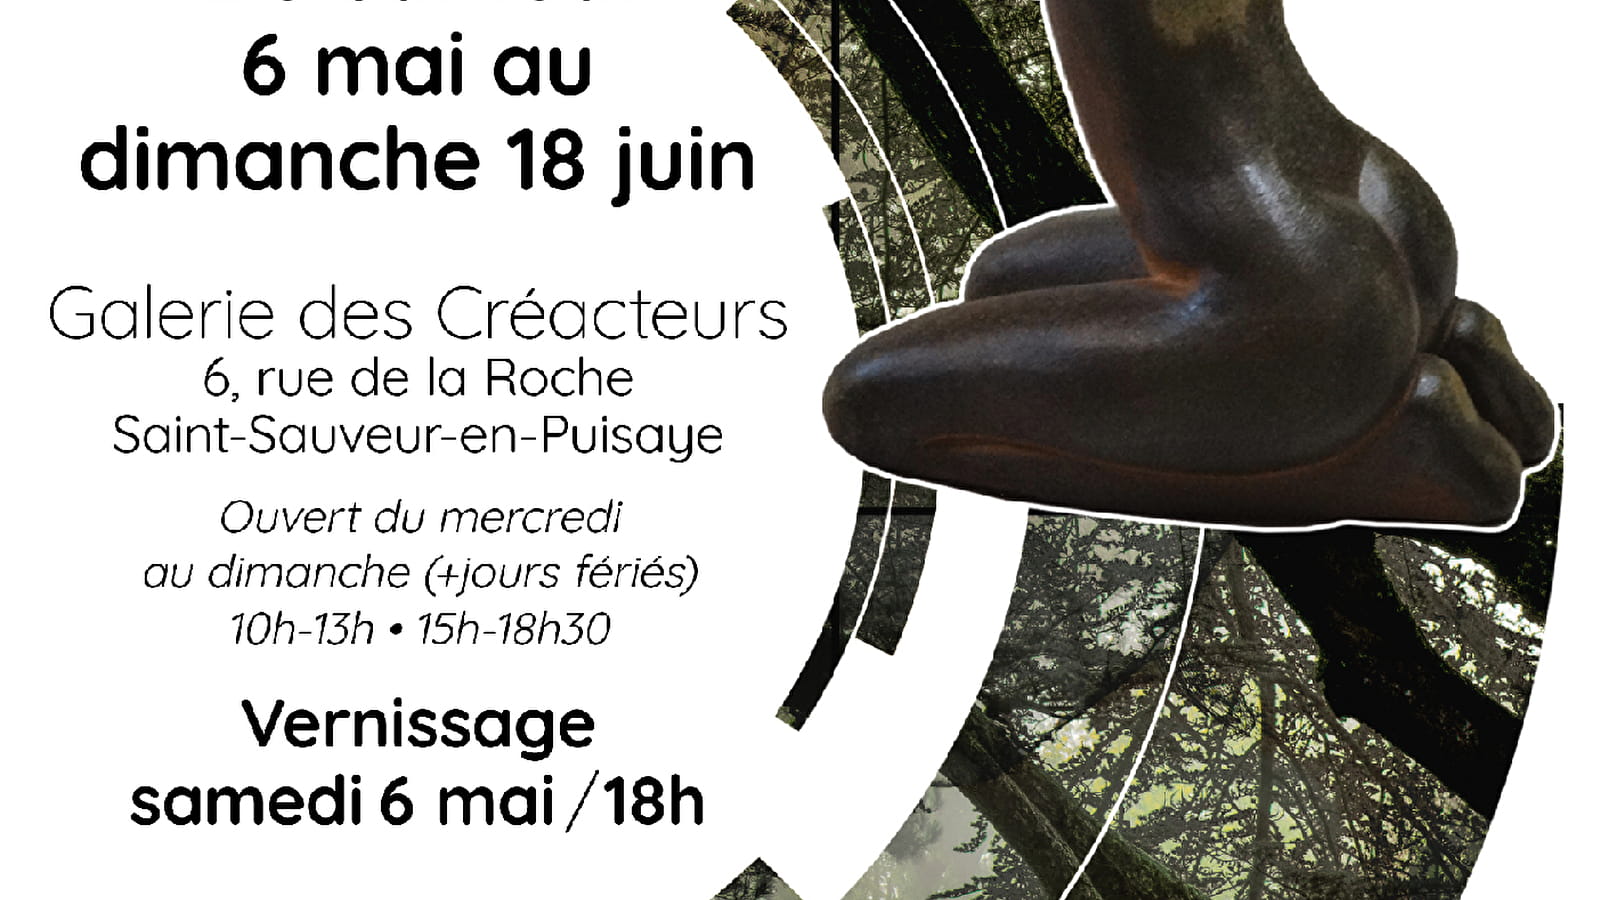 Exhibition Les Créacteurs en Puisaye